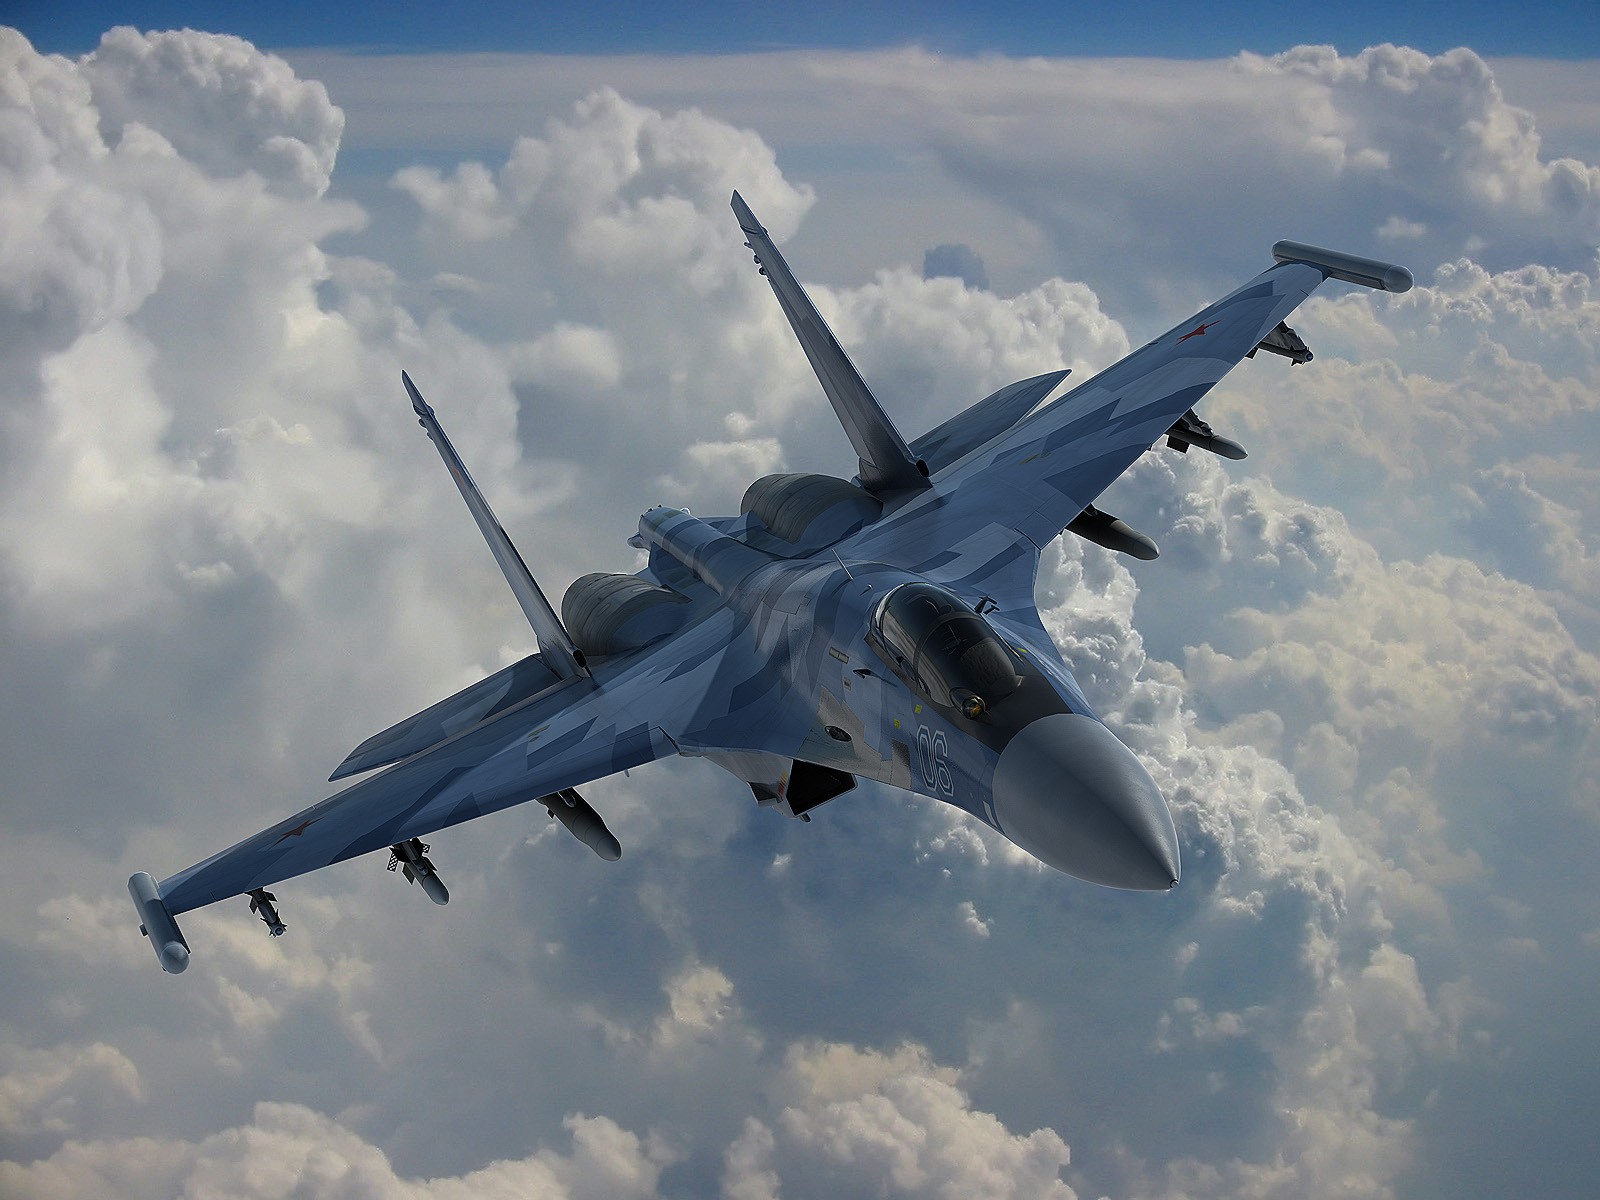 Wszystko wskazuje na to, że jednak pierwszym klientem zagranicznym, który kupi samoloty Su-35 będą Chiny -fot. worldfightejet.blogspot.com.